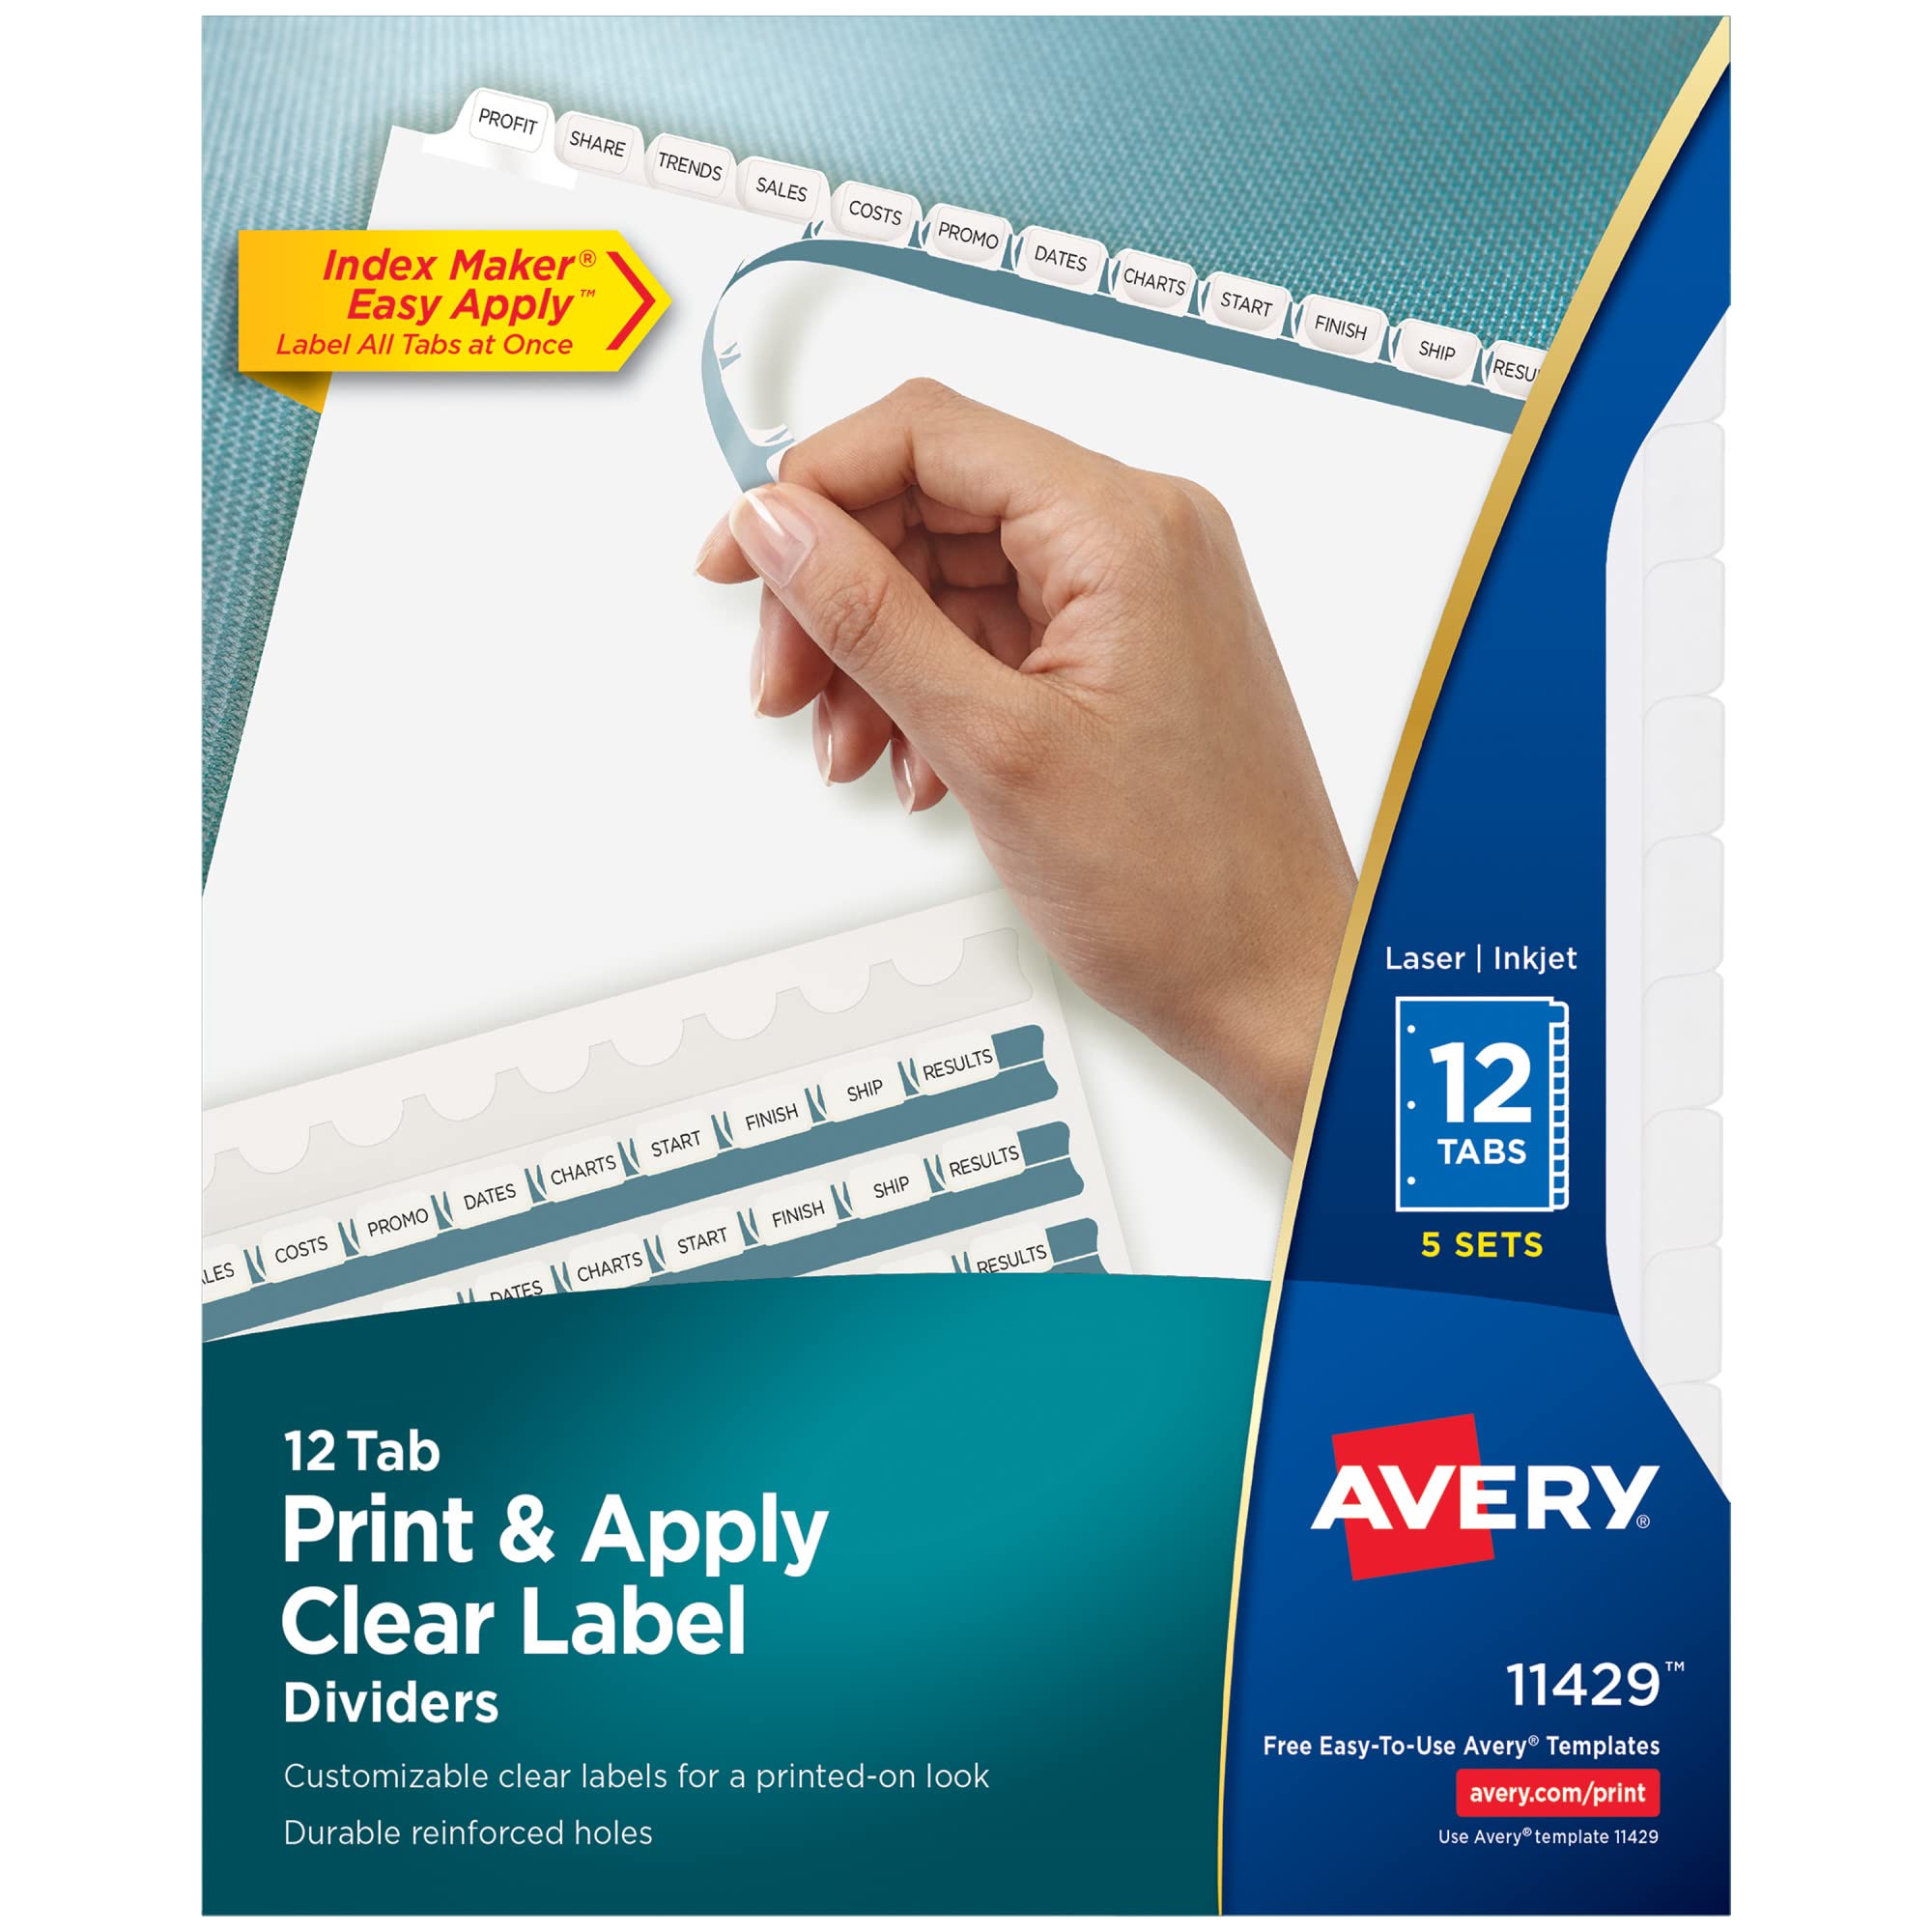  Avery 3 リング バインダー用タブ ディバイダー 12 枚、印刷と貼り付けが簡単な透明ラベル ストリップ、インデックス メーカーでカスタマイズ可能な...